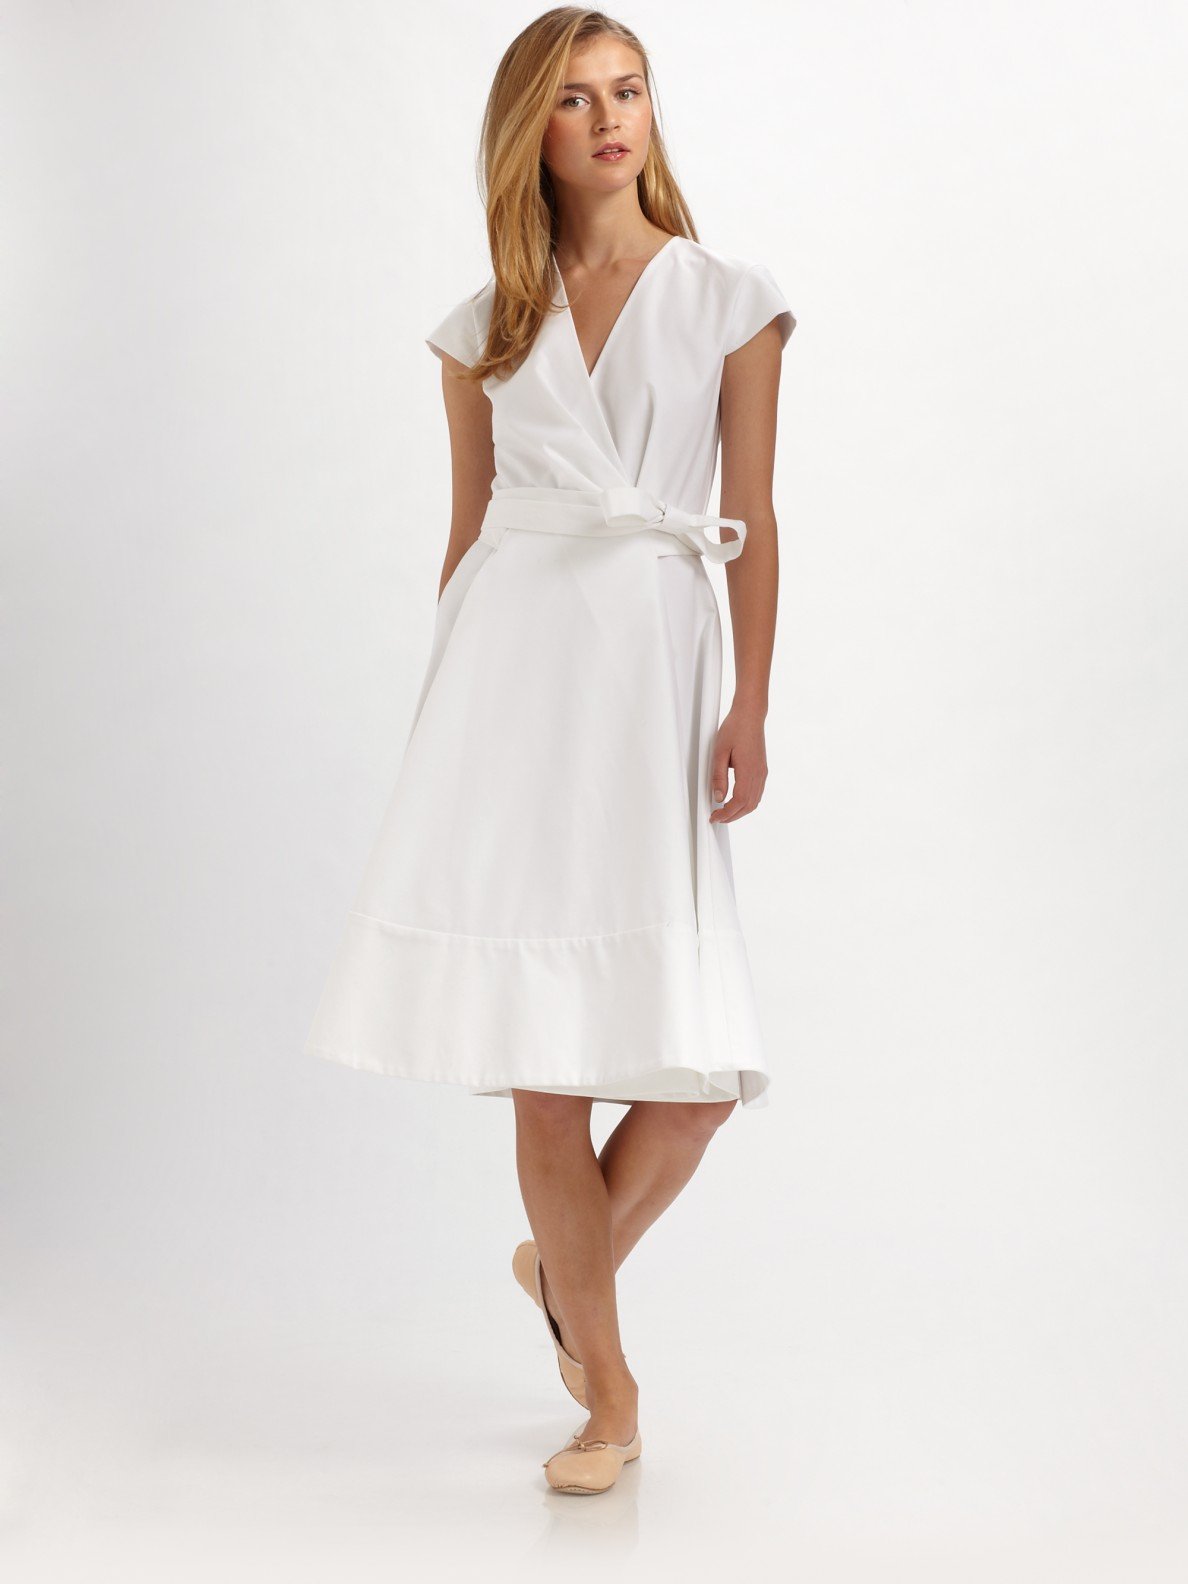 Cotton Wrap Around Dress Online Deals ...